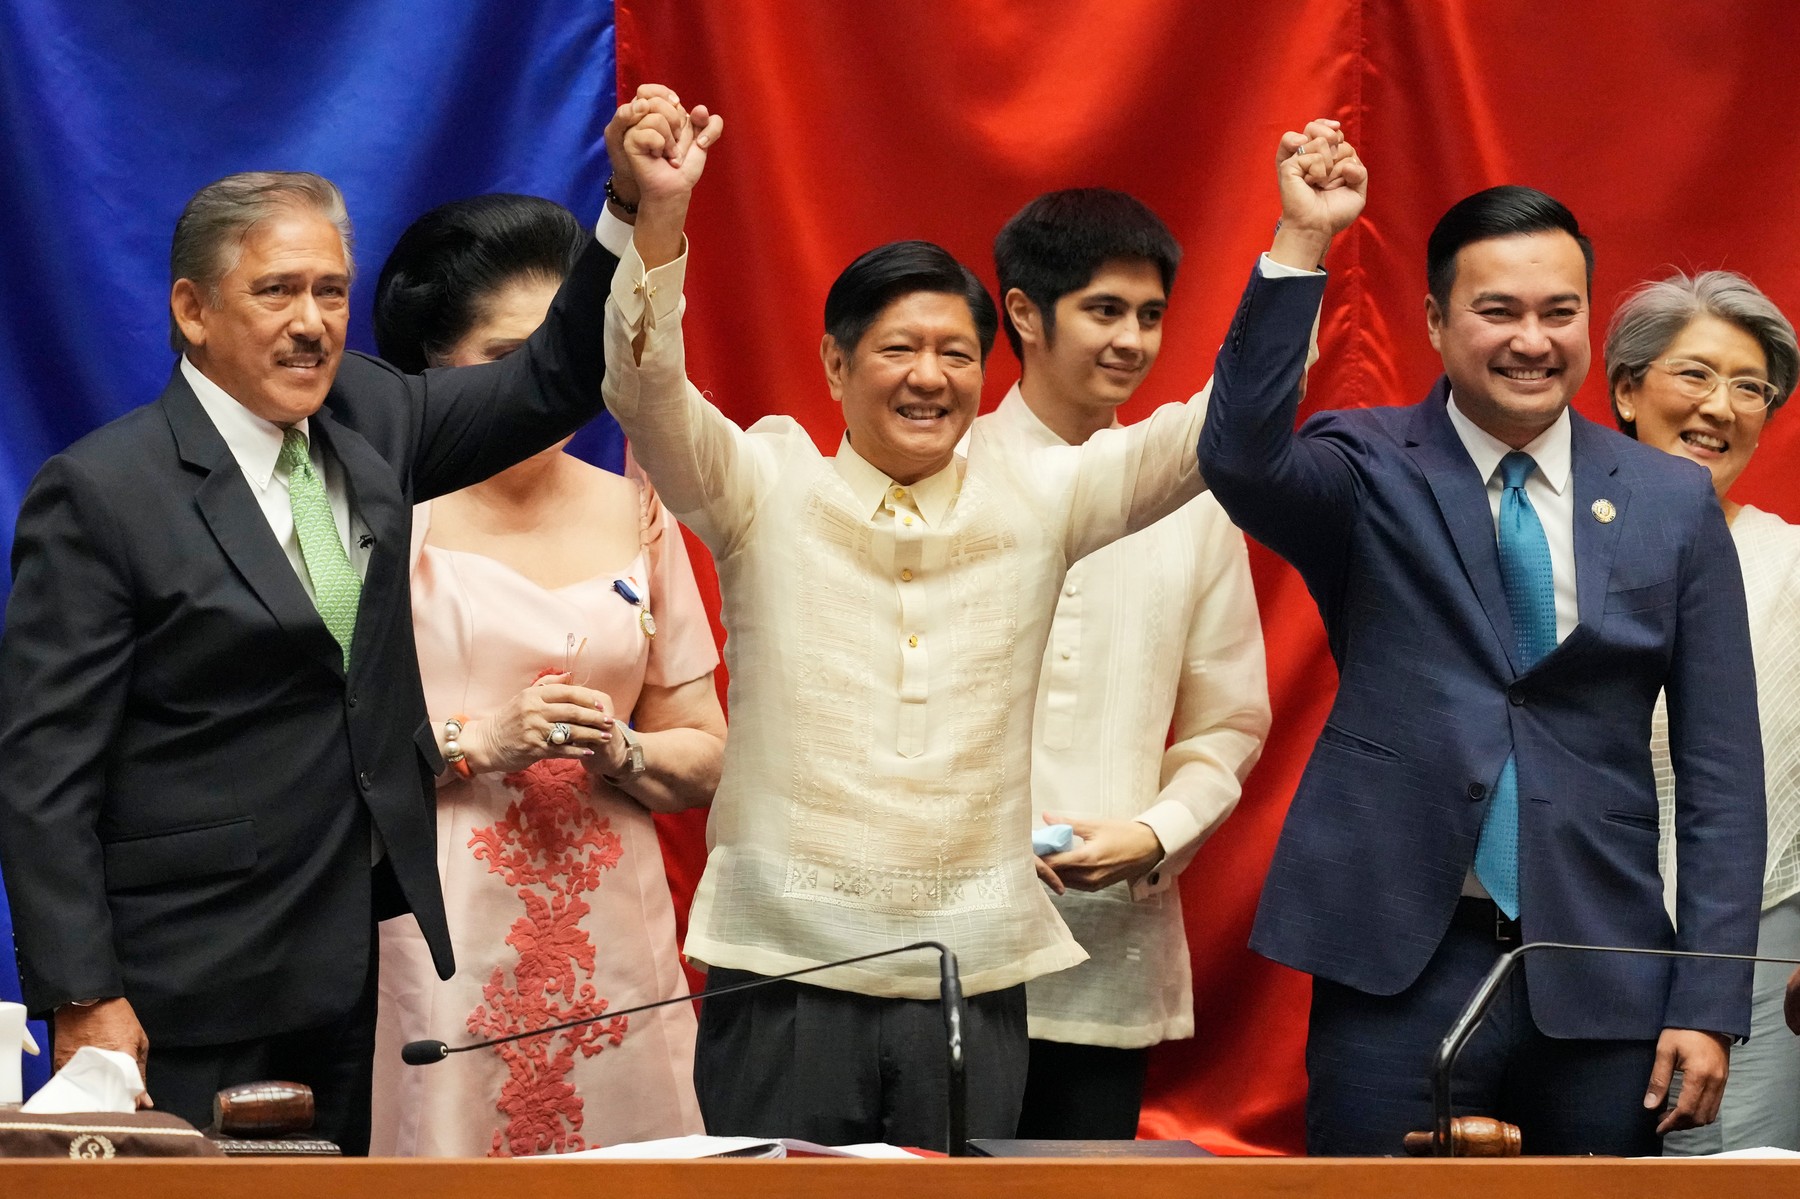 Fiul fostului dictator Ferdinand Marcos a fost proclamat noul presedinte al Filipinelor